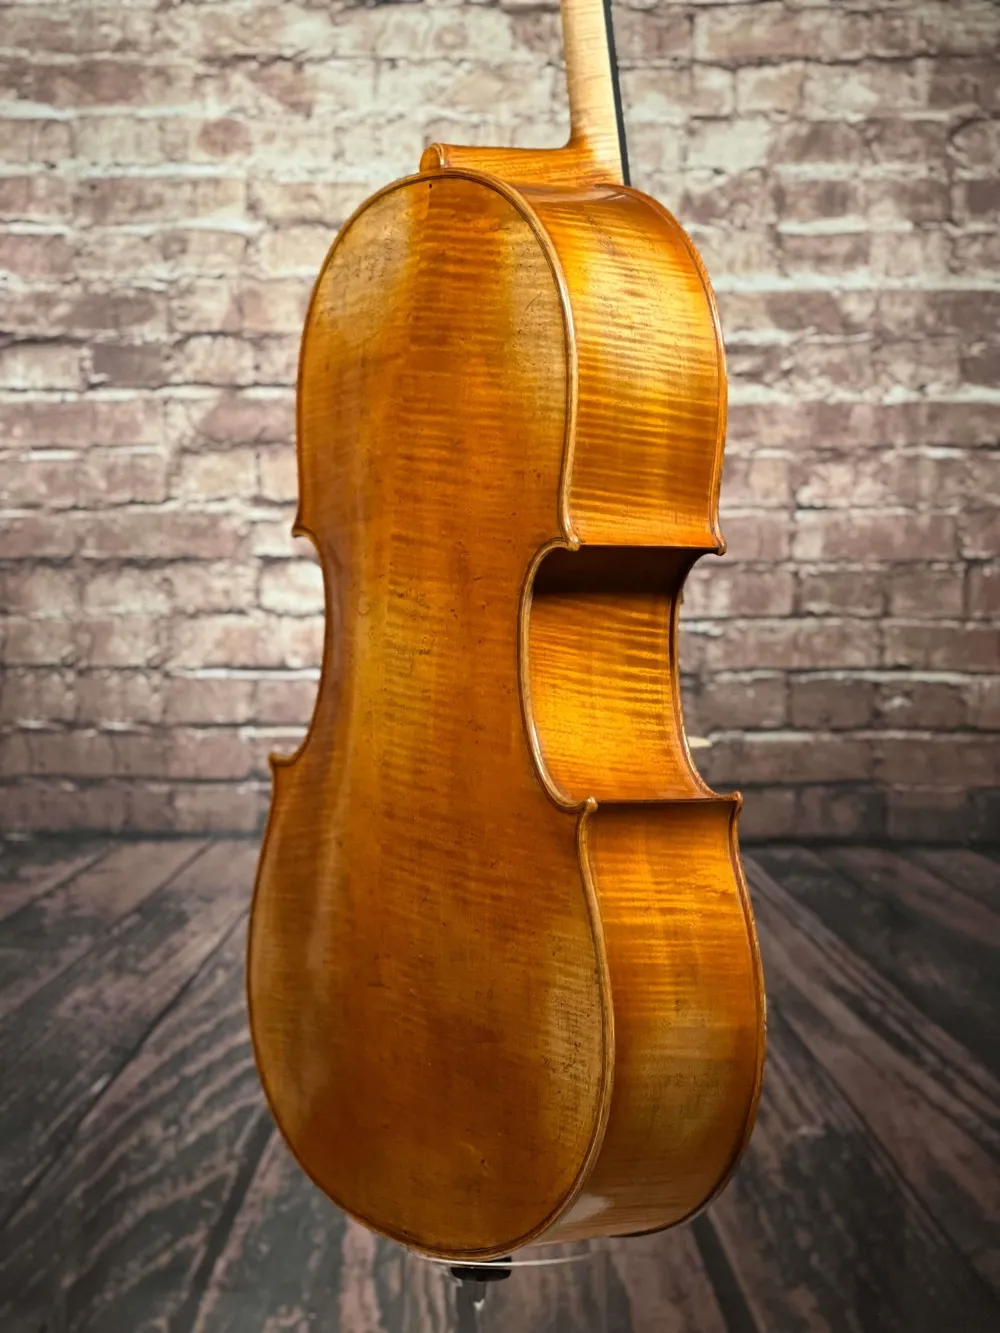 Boden-Zarge-Detailansicht einer Simon Joseph Goffriller Cello (Violoncello) Handarbeit 2019